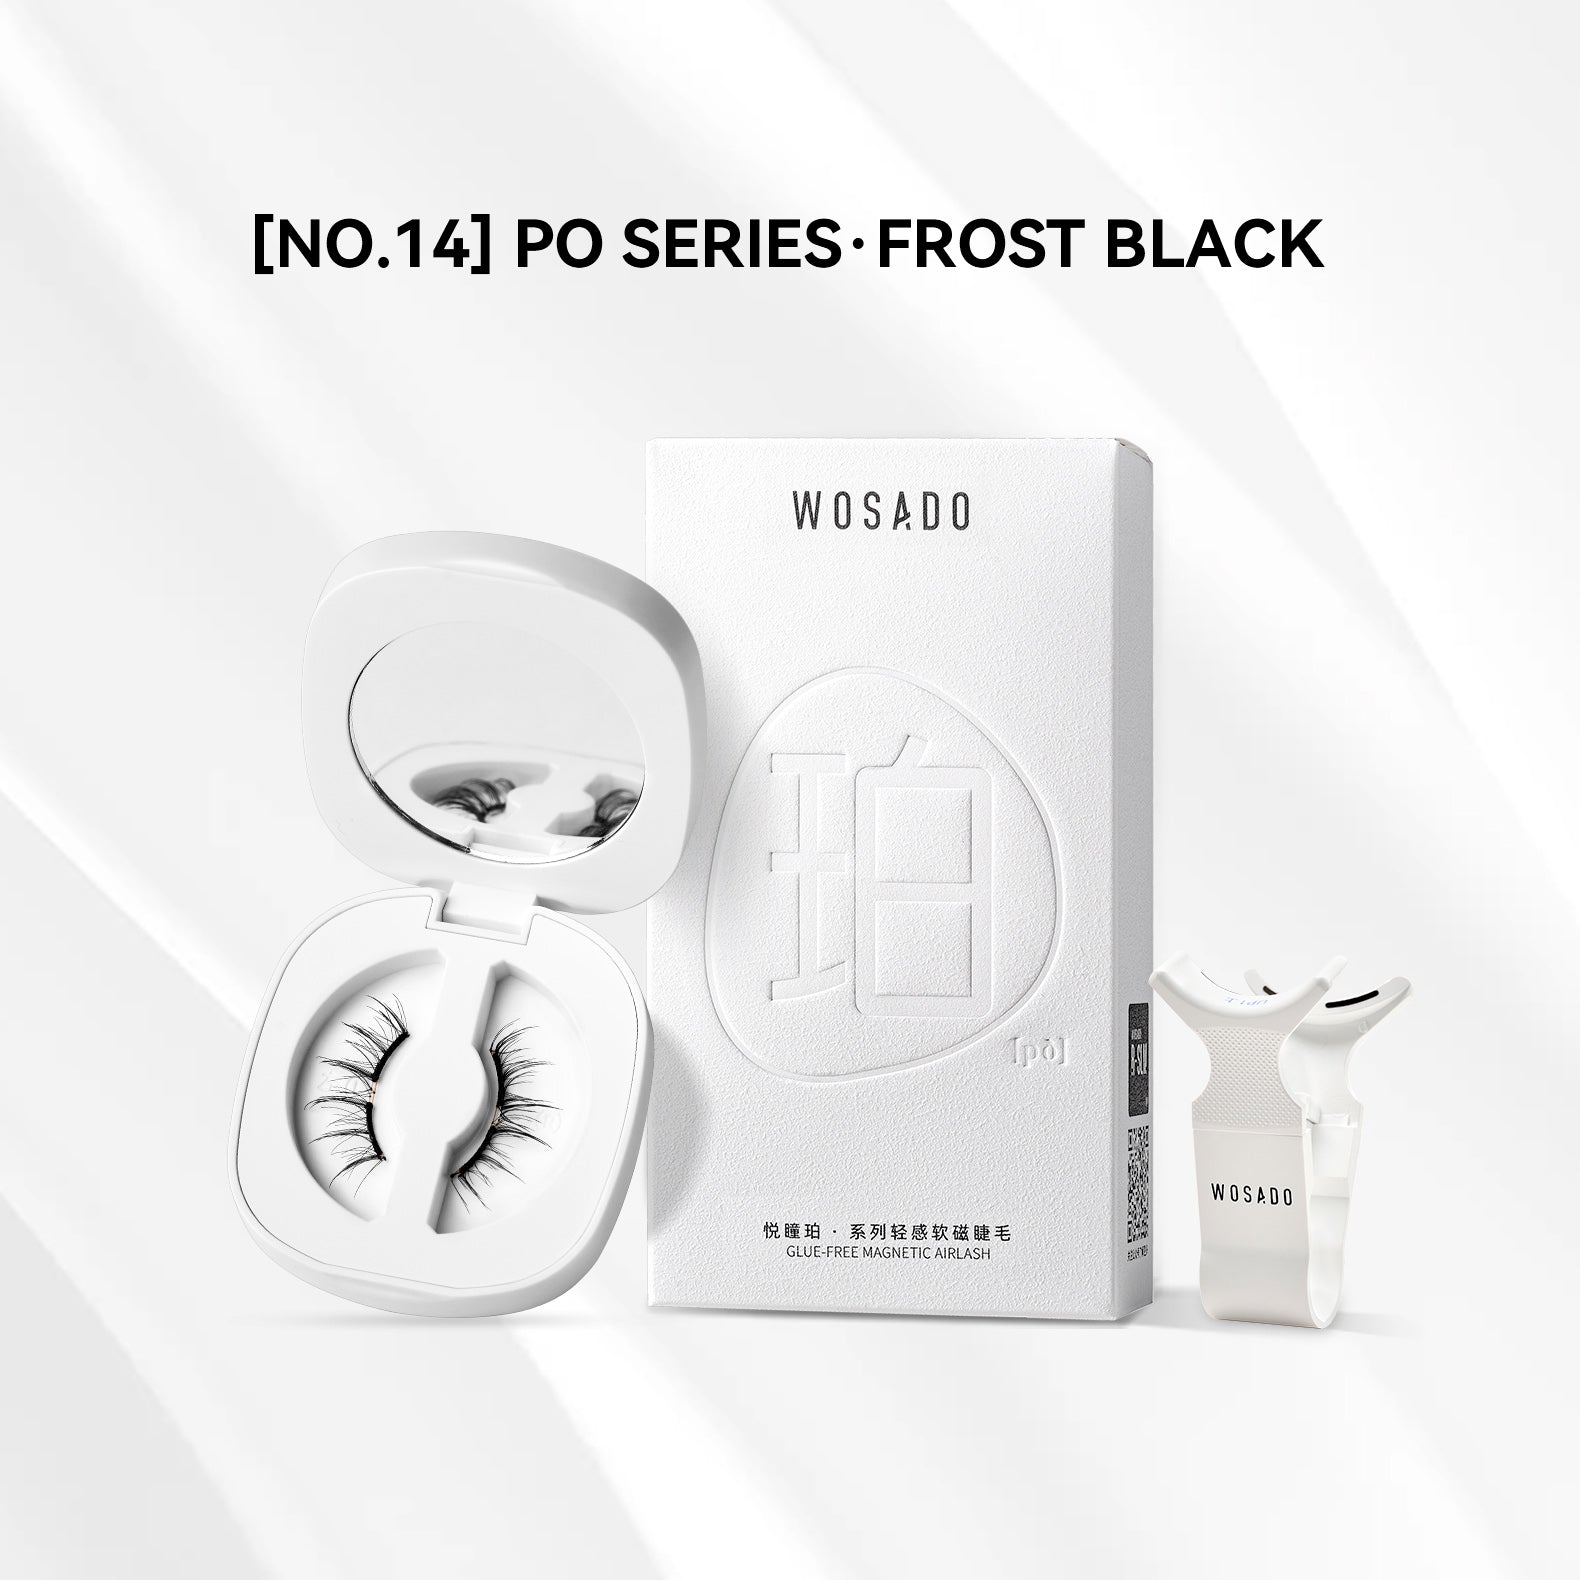 【WOSADO】NO.14 Frost Black